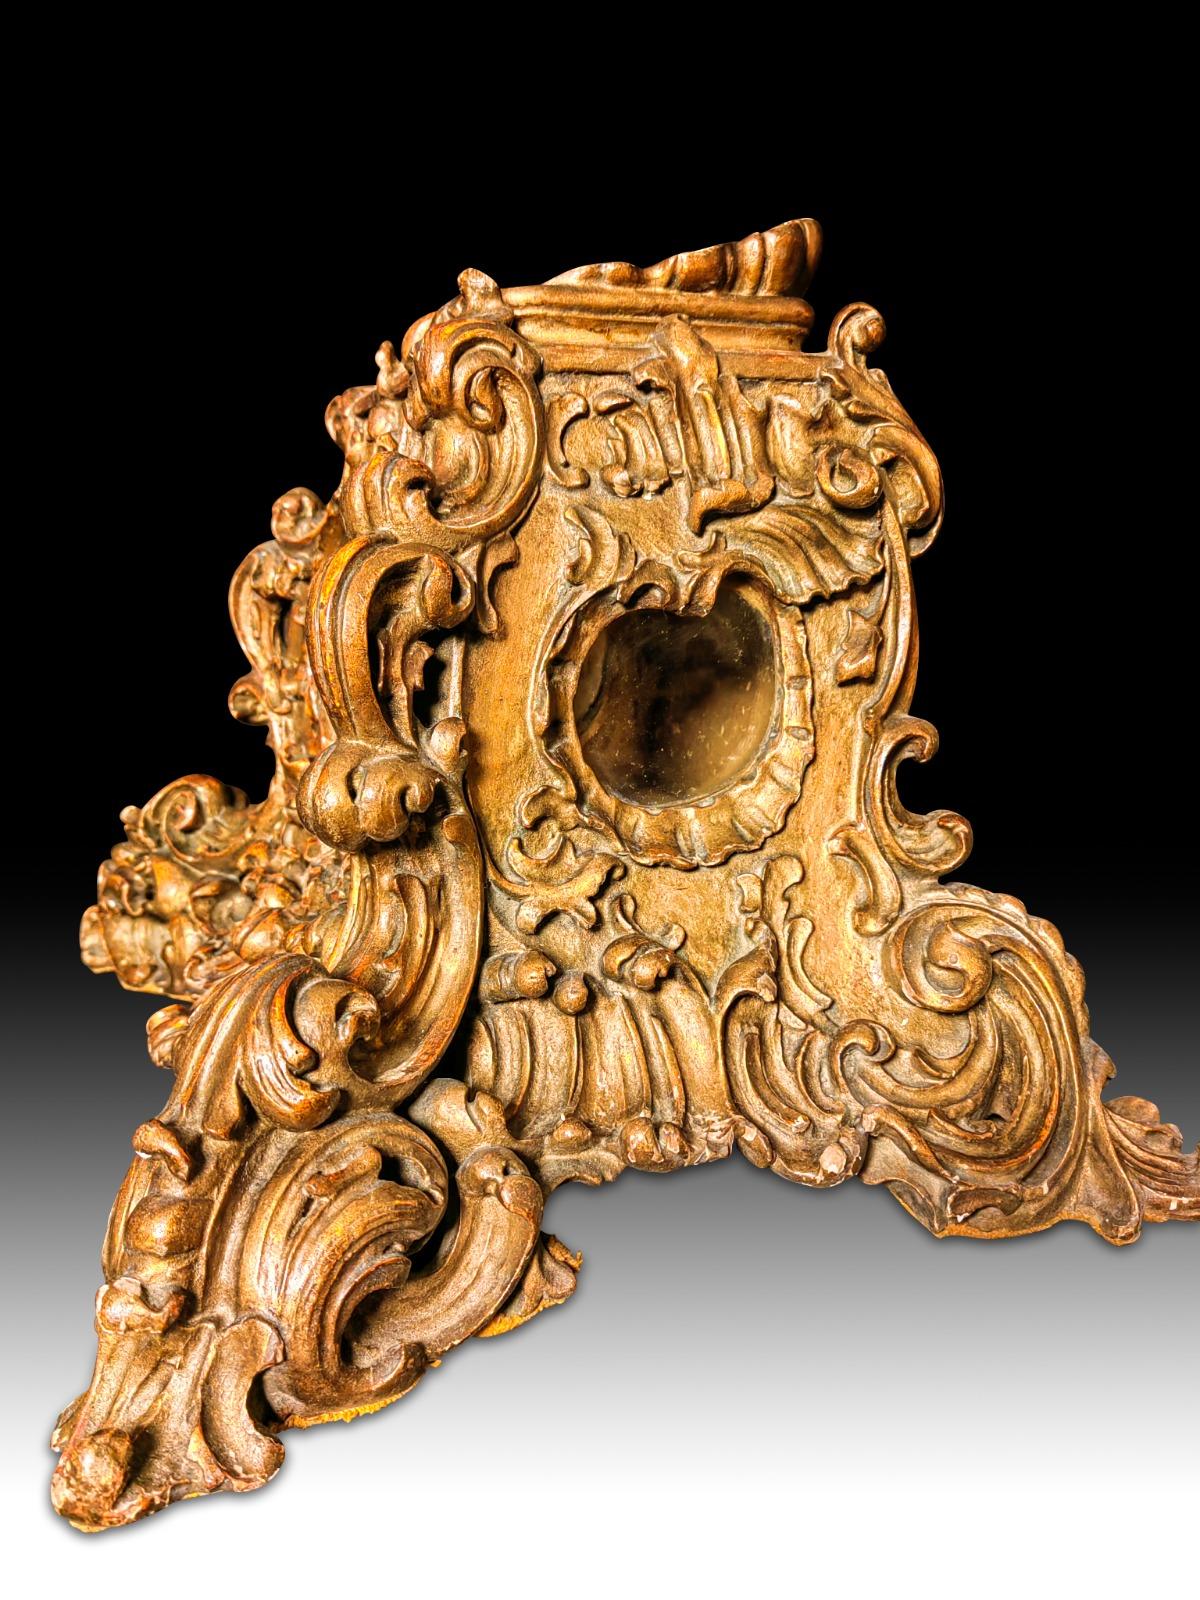 Barocke Reliquie des achtzehnten Jahrhunderts wichtige italienische barocke Reliquie des achtzehnten Jahrhunderts ganz in Holz und Gold geschnitzt 
Maße: 45X30X27 CM